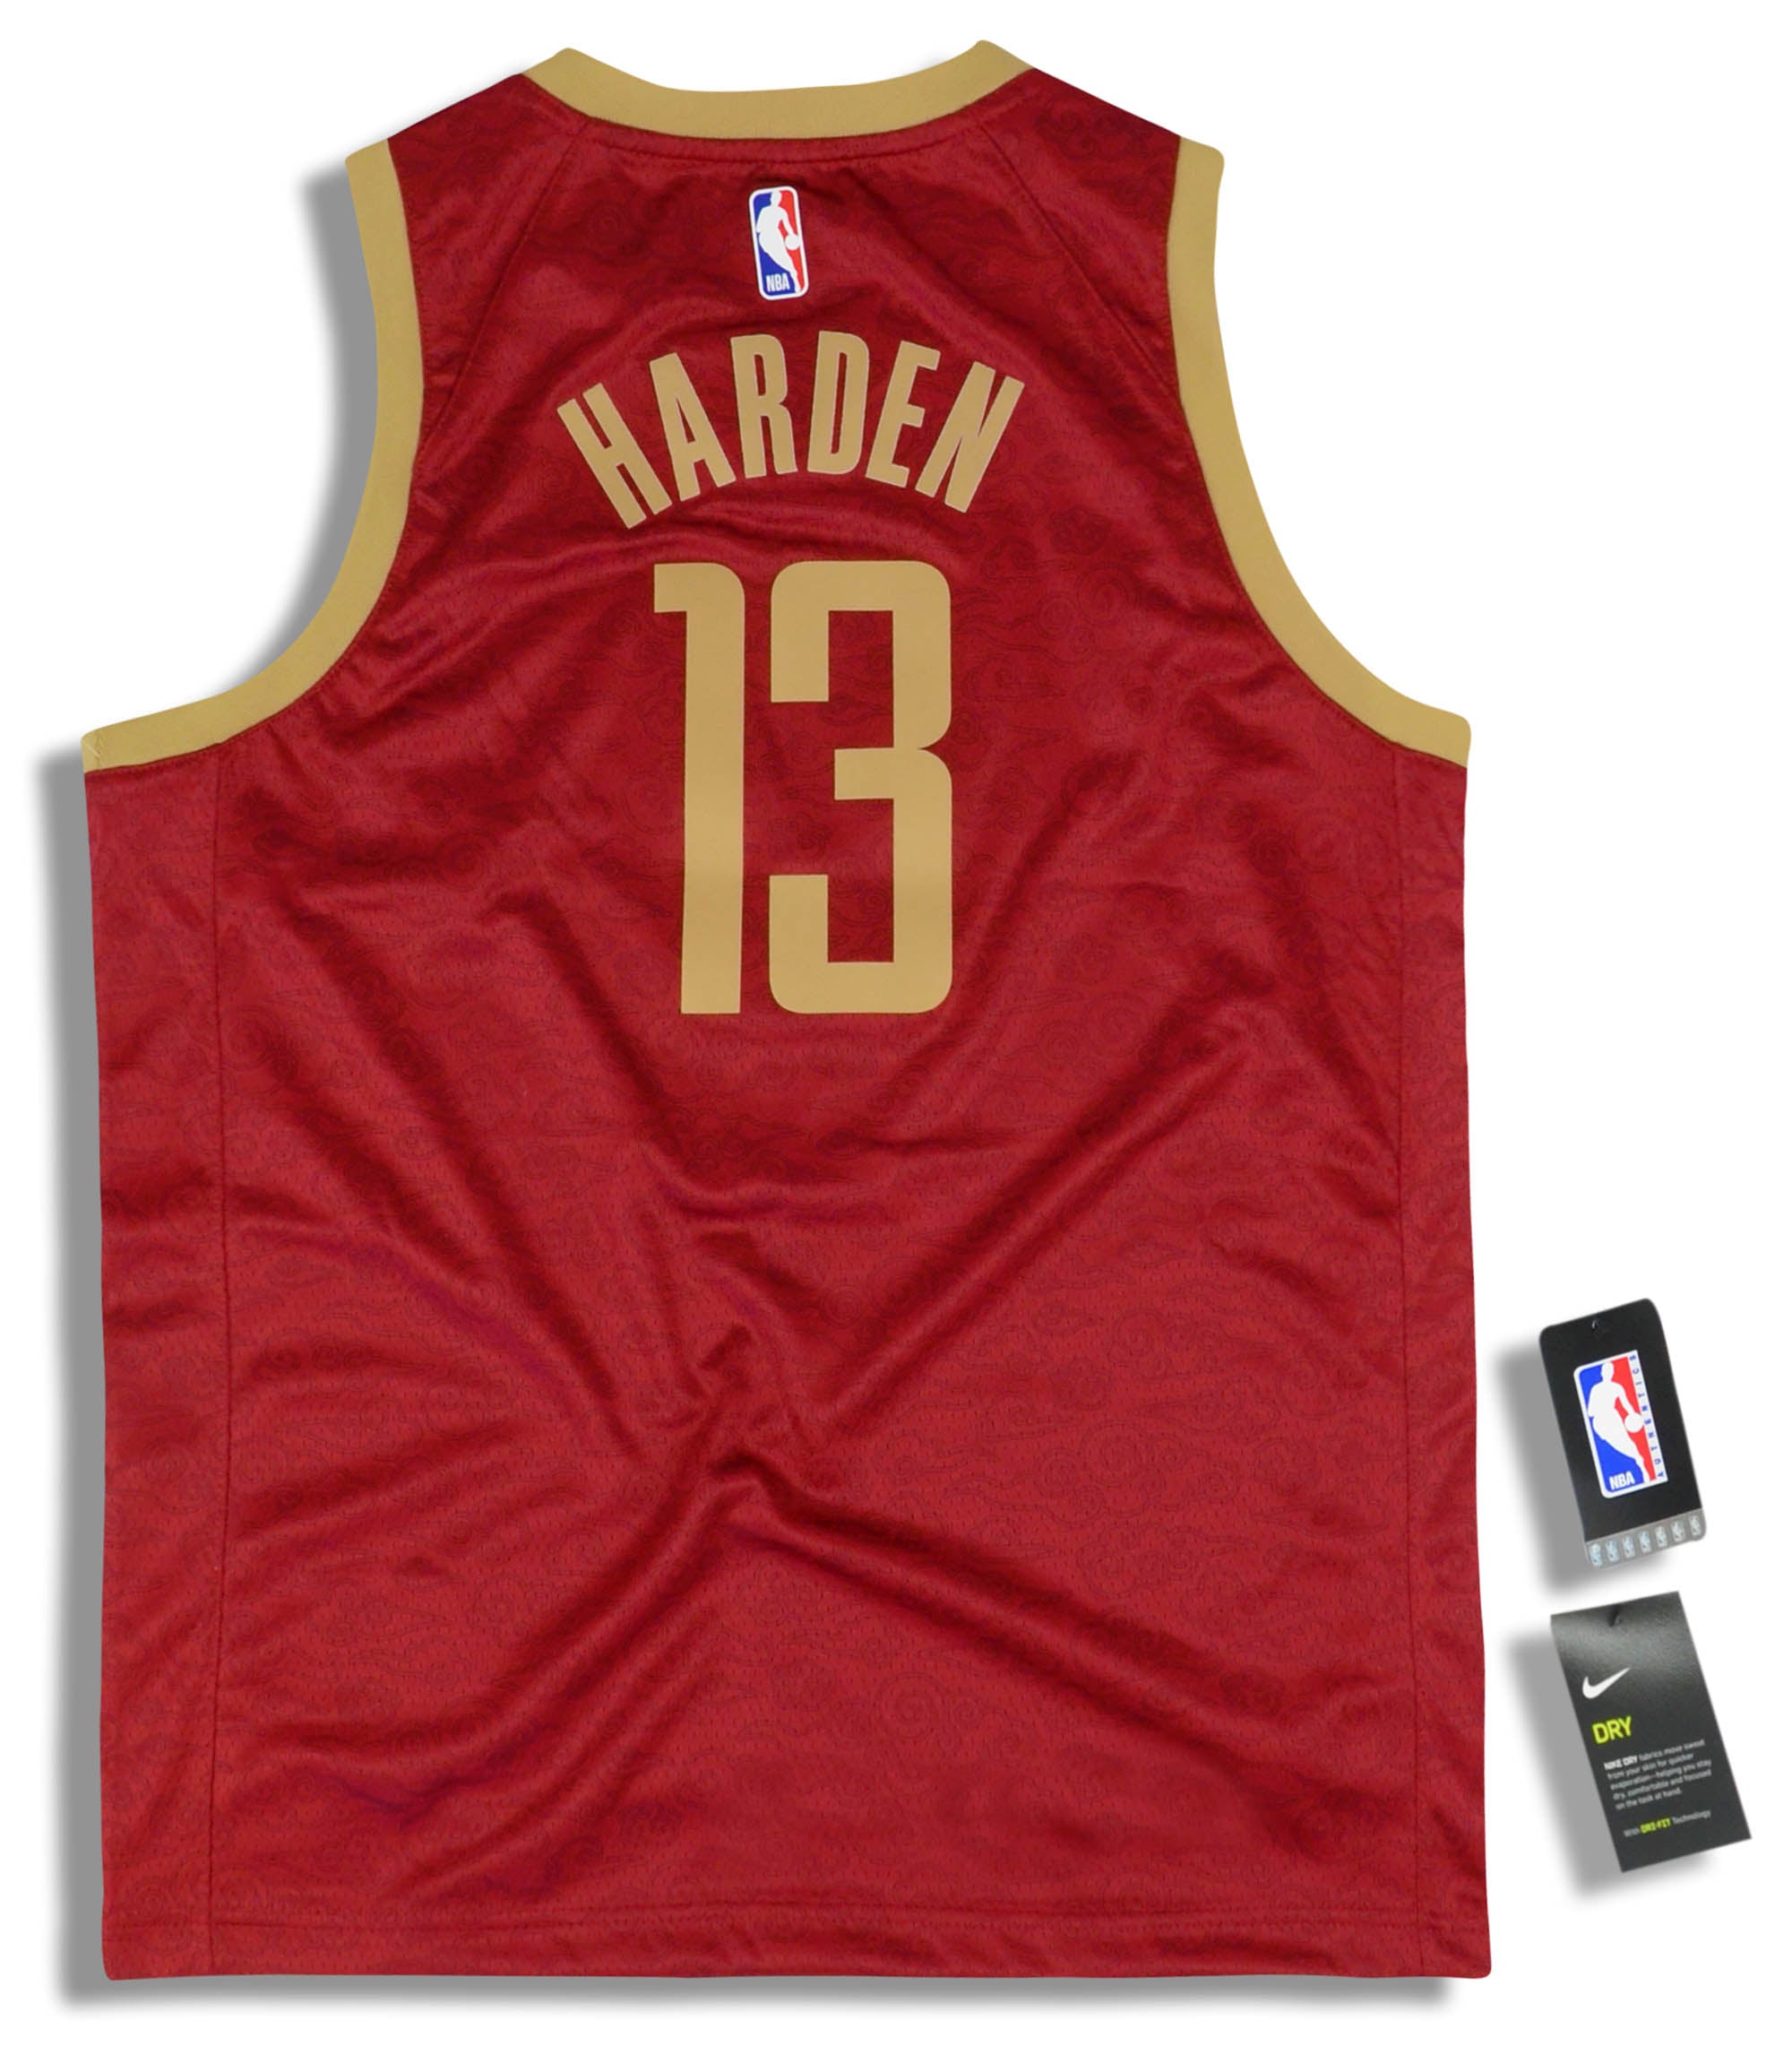 James Harden Houston Rockets Nike 2018/19 Swingman Jersey Red - Earned  Edition